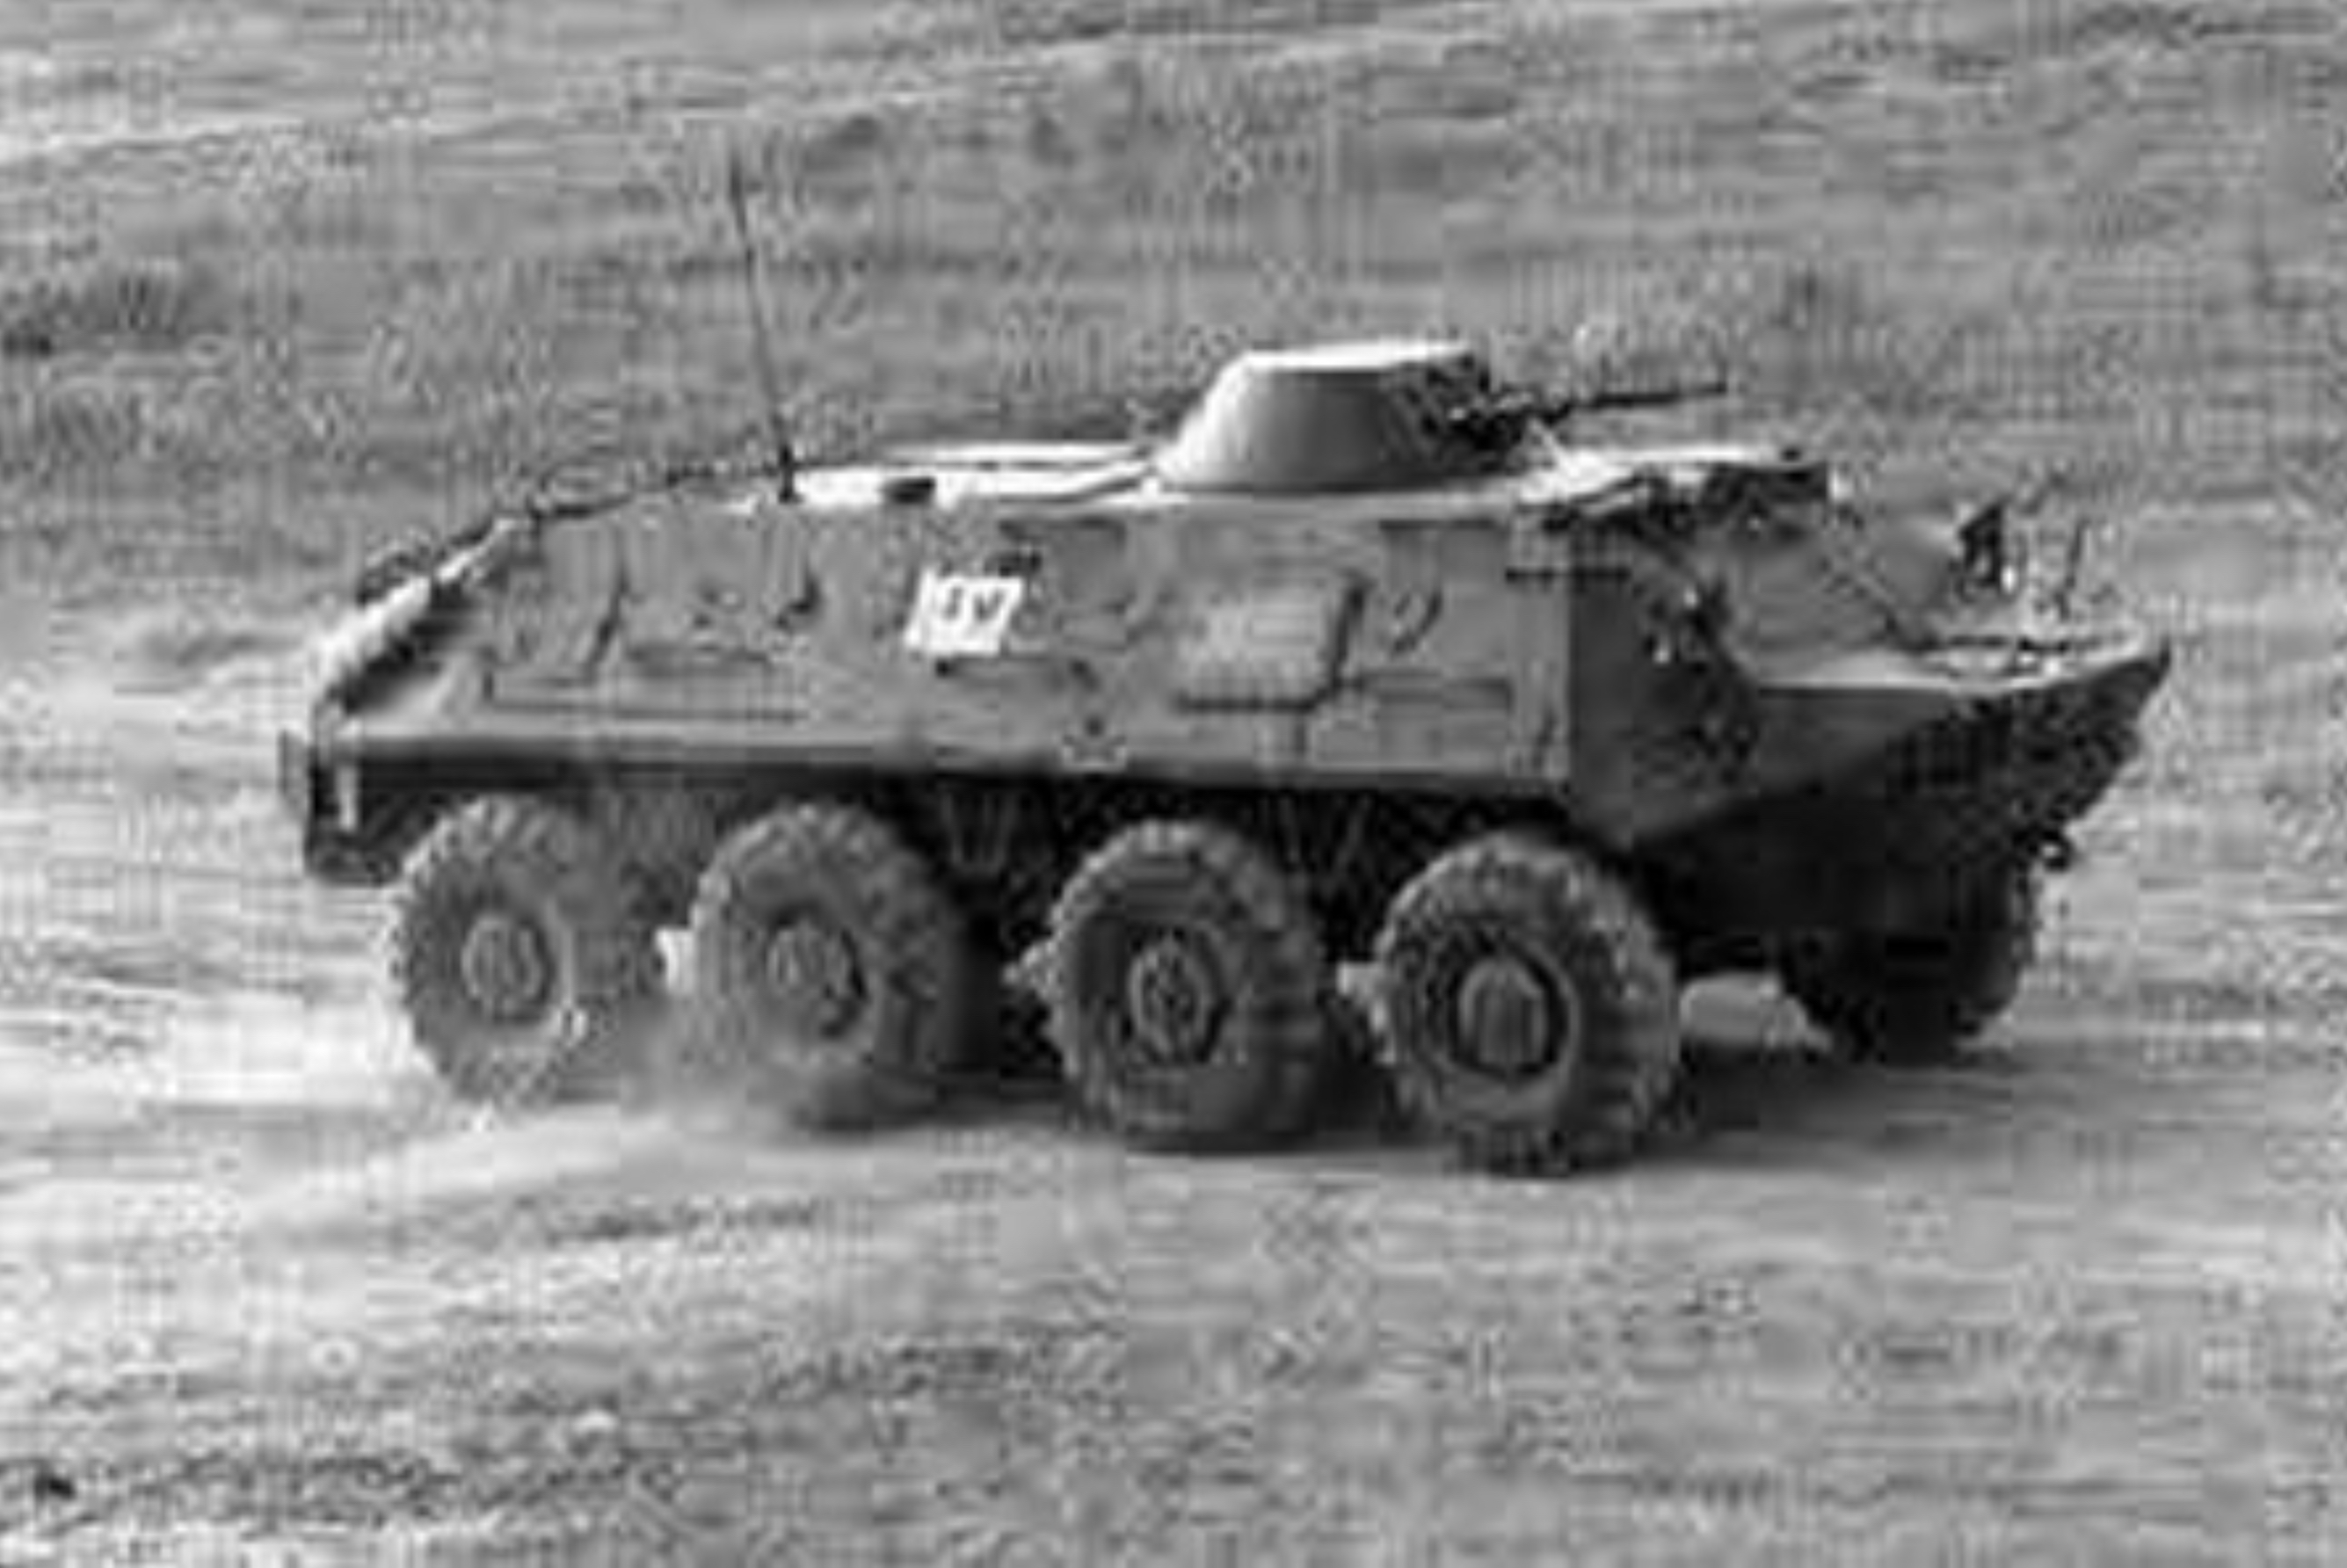 a Russian BTR troop carrier